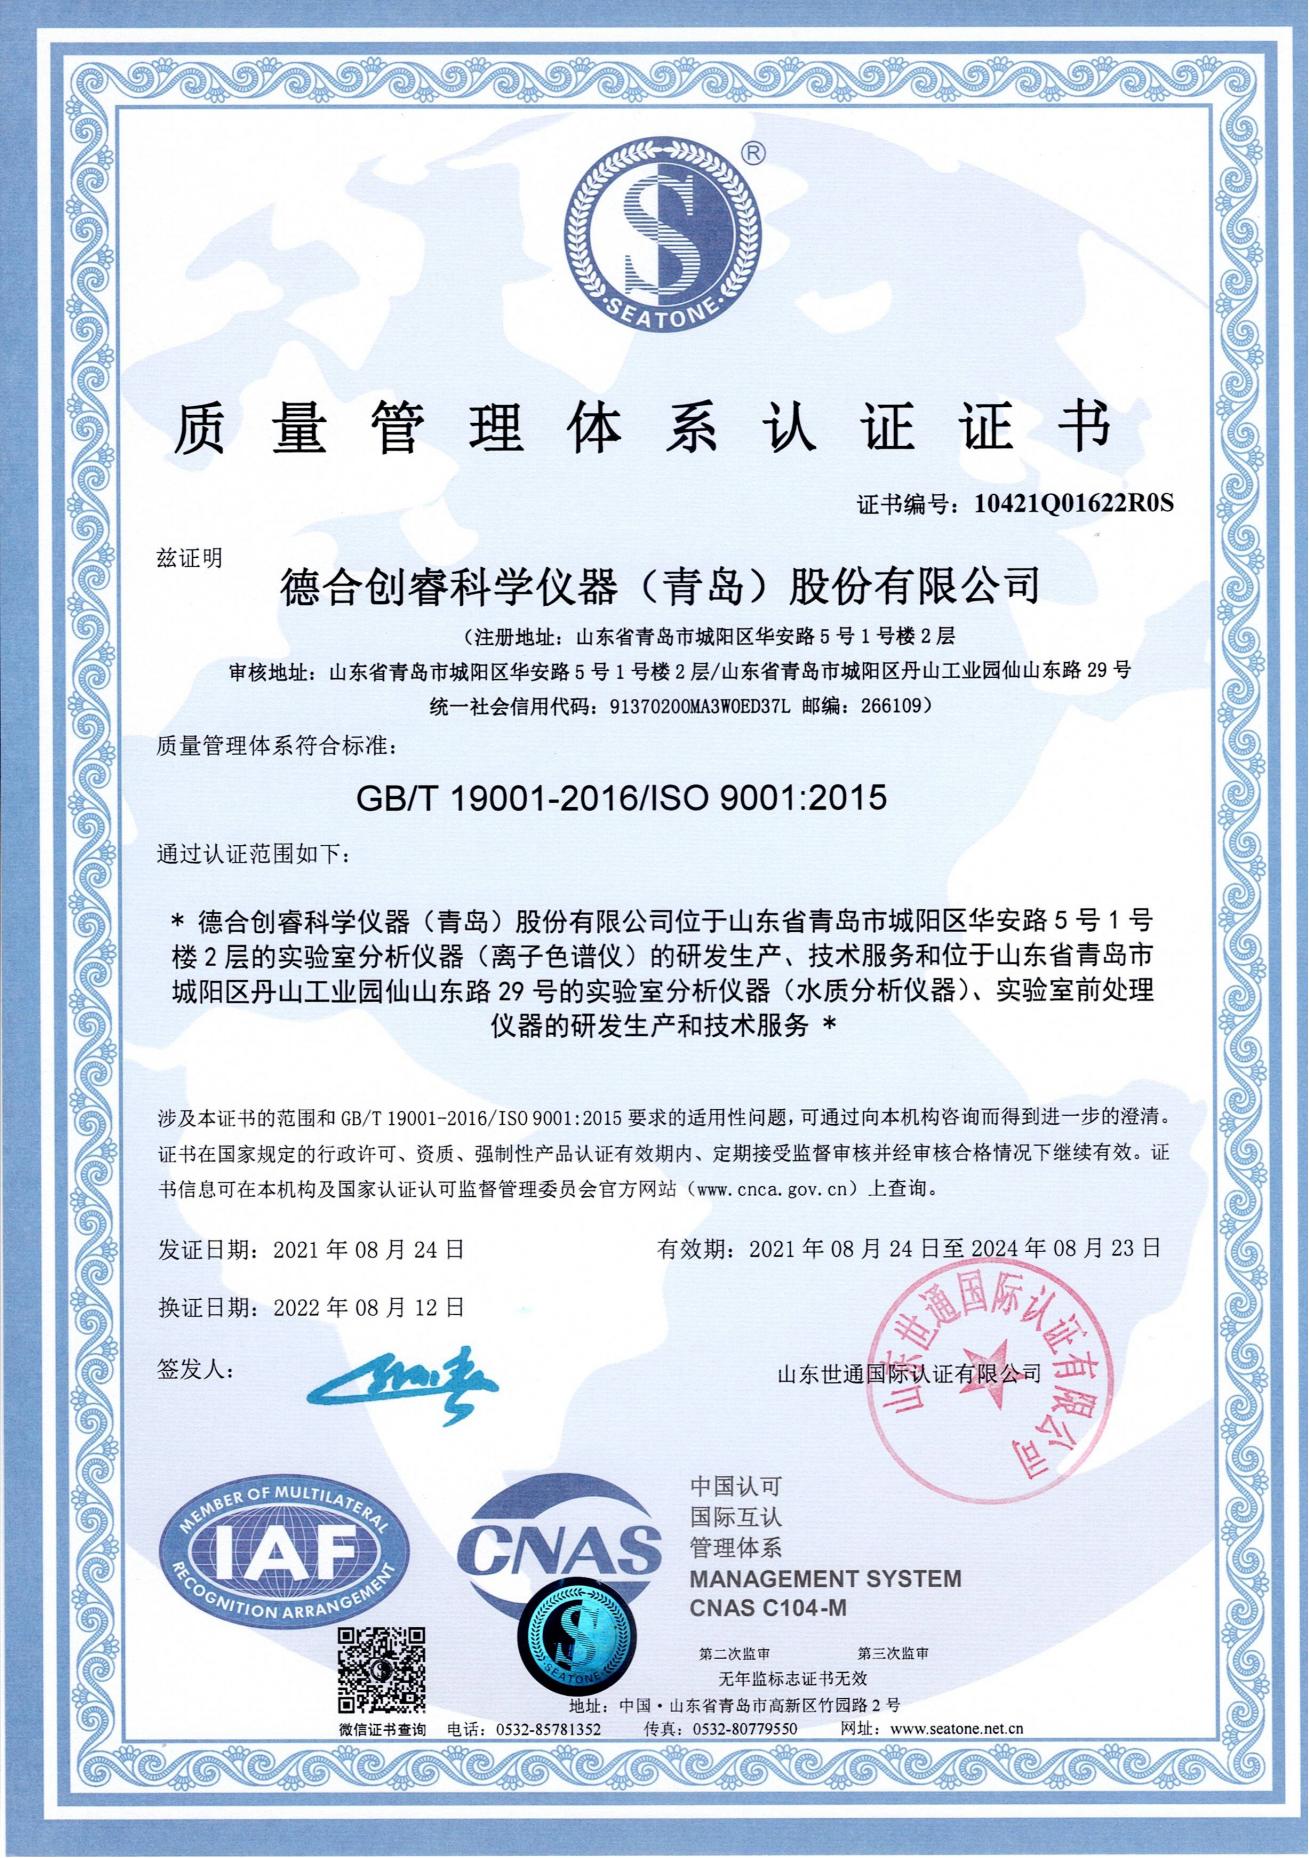 新蒲京娱乐场官网8555cc最新网站离子色谱仪质量管理体系认证证书